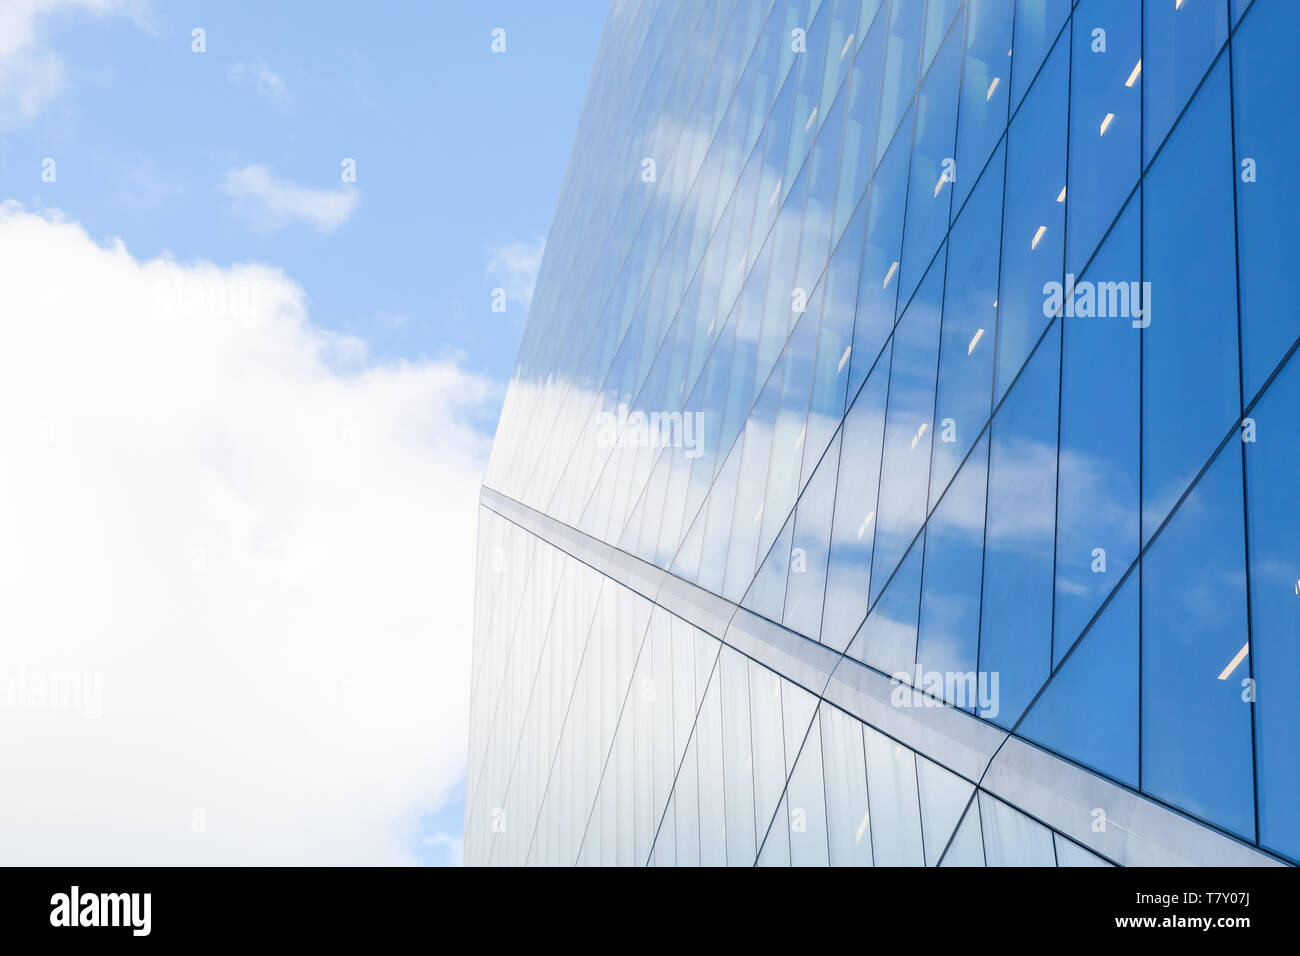 La arquitectura comercial moderno abstracto, paredes de metal y cristal brillante bajo el azul cielo nublado Foto de stock